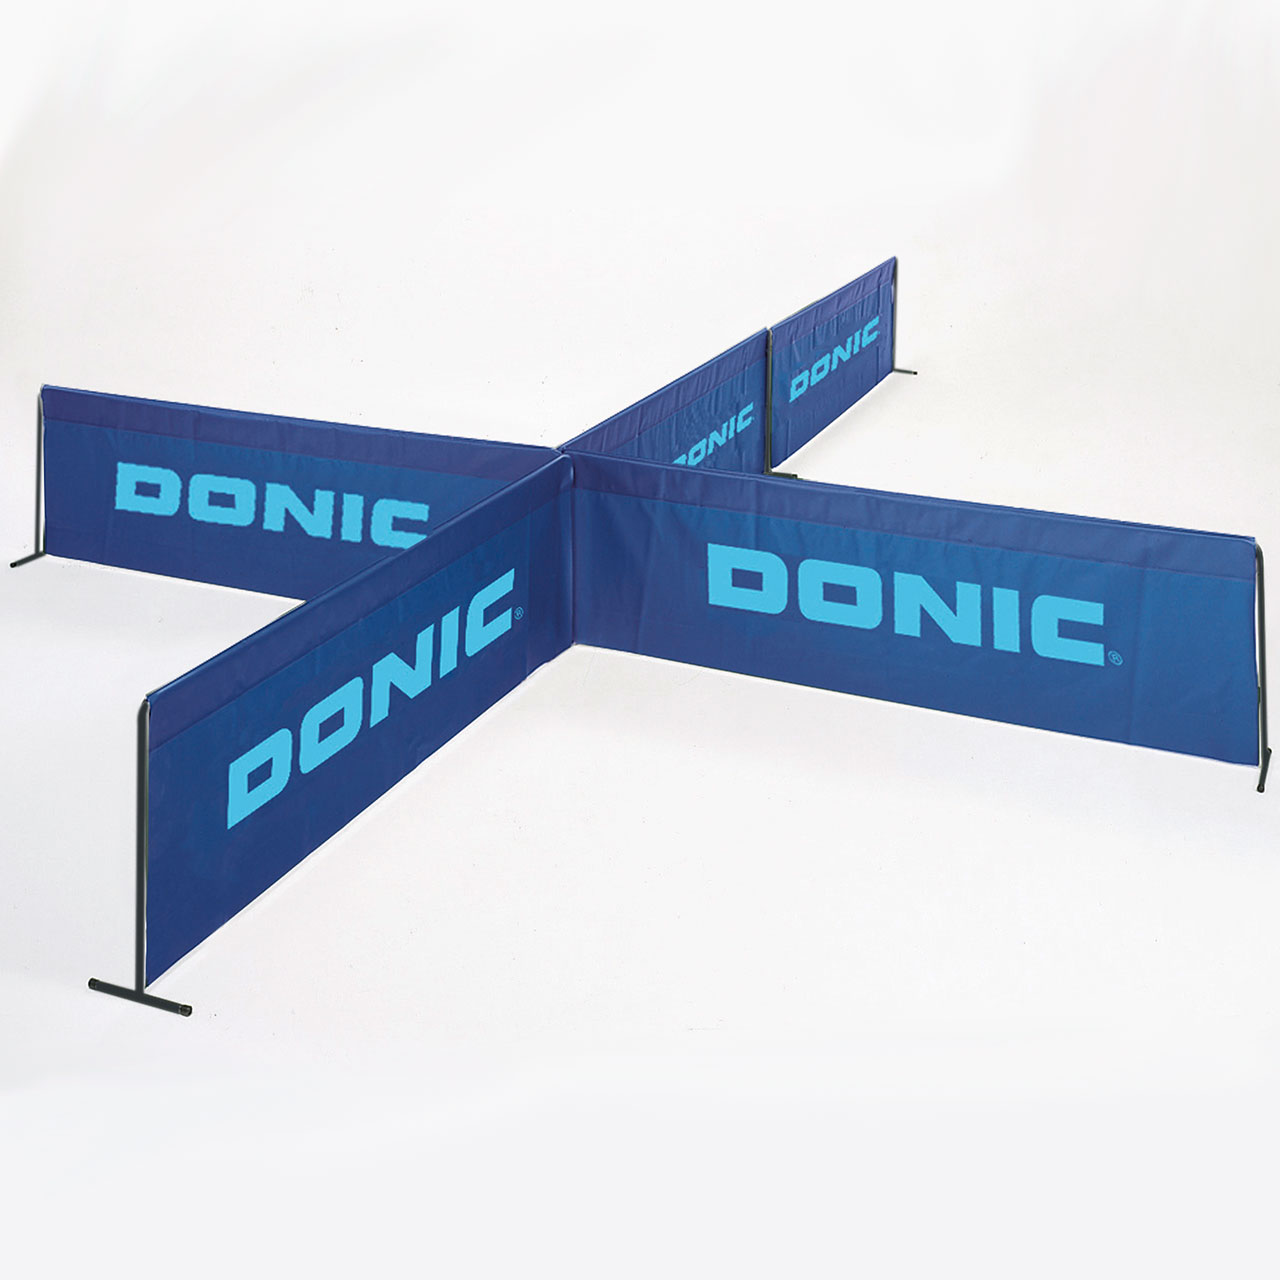 Tischtennis-Umrandung DONIC, Farbe blau, Größe 2,33x0,73m, 10er Set